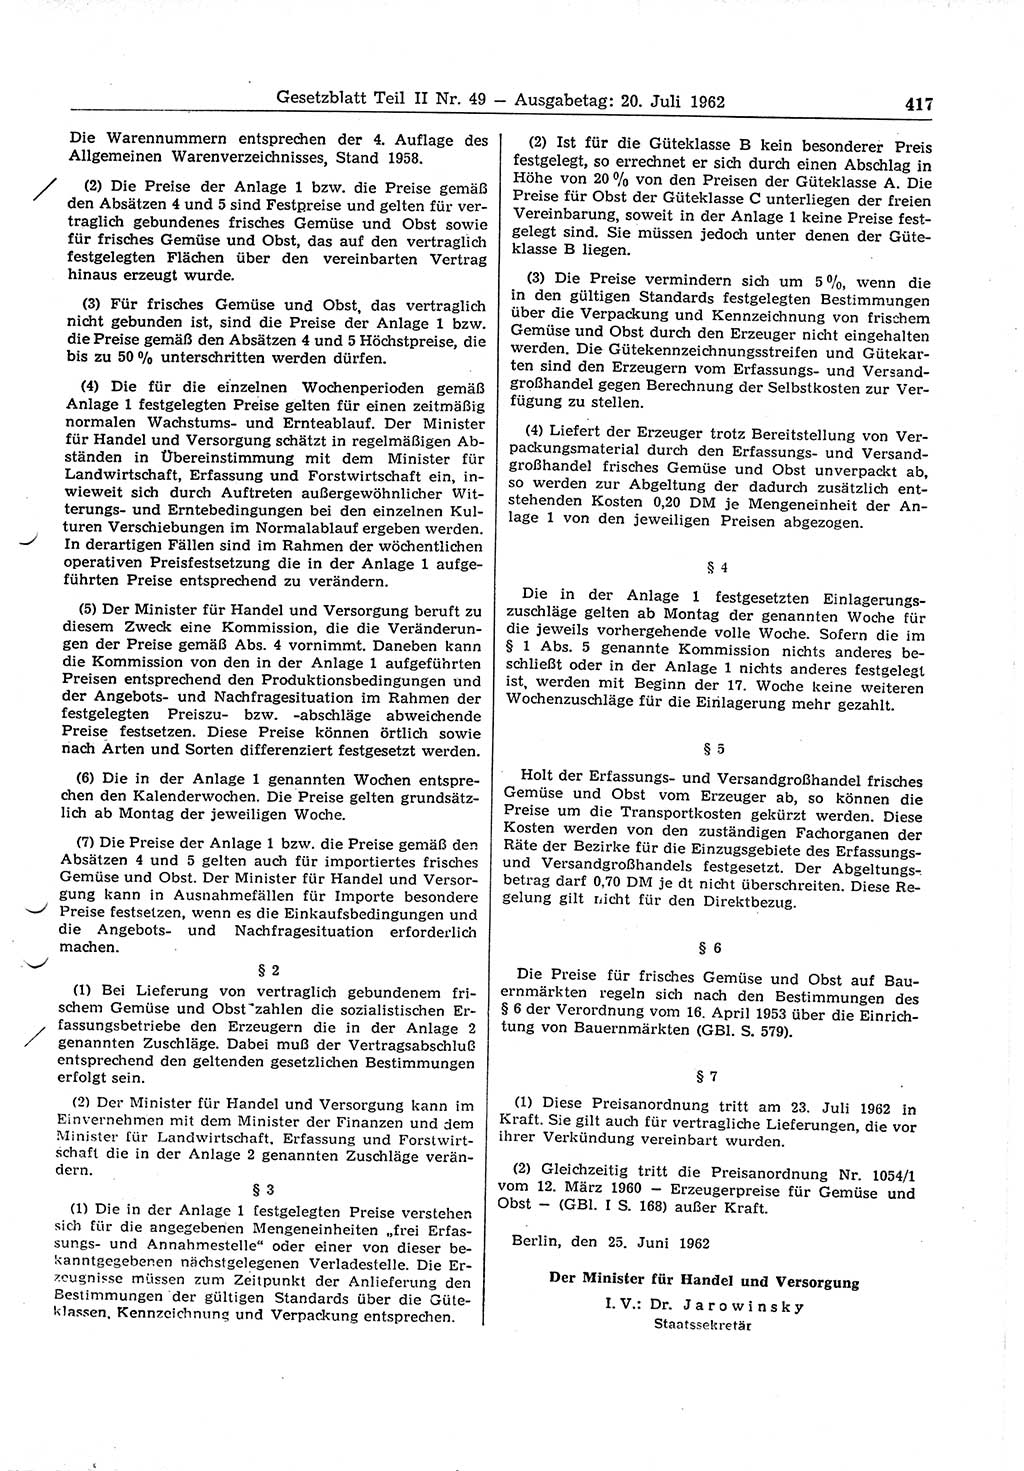 Gesetzblatt (GBl.) der Deutschen Demokratischen Republik (DDR) Teil ⅠⅠ 1962, Seite 417 (GBl. DDR ⅠⅠ 1962, S. 417)